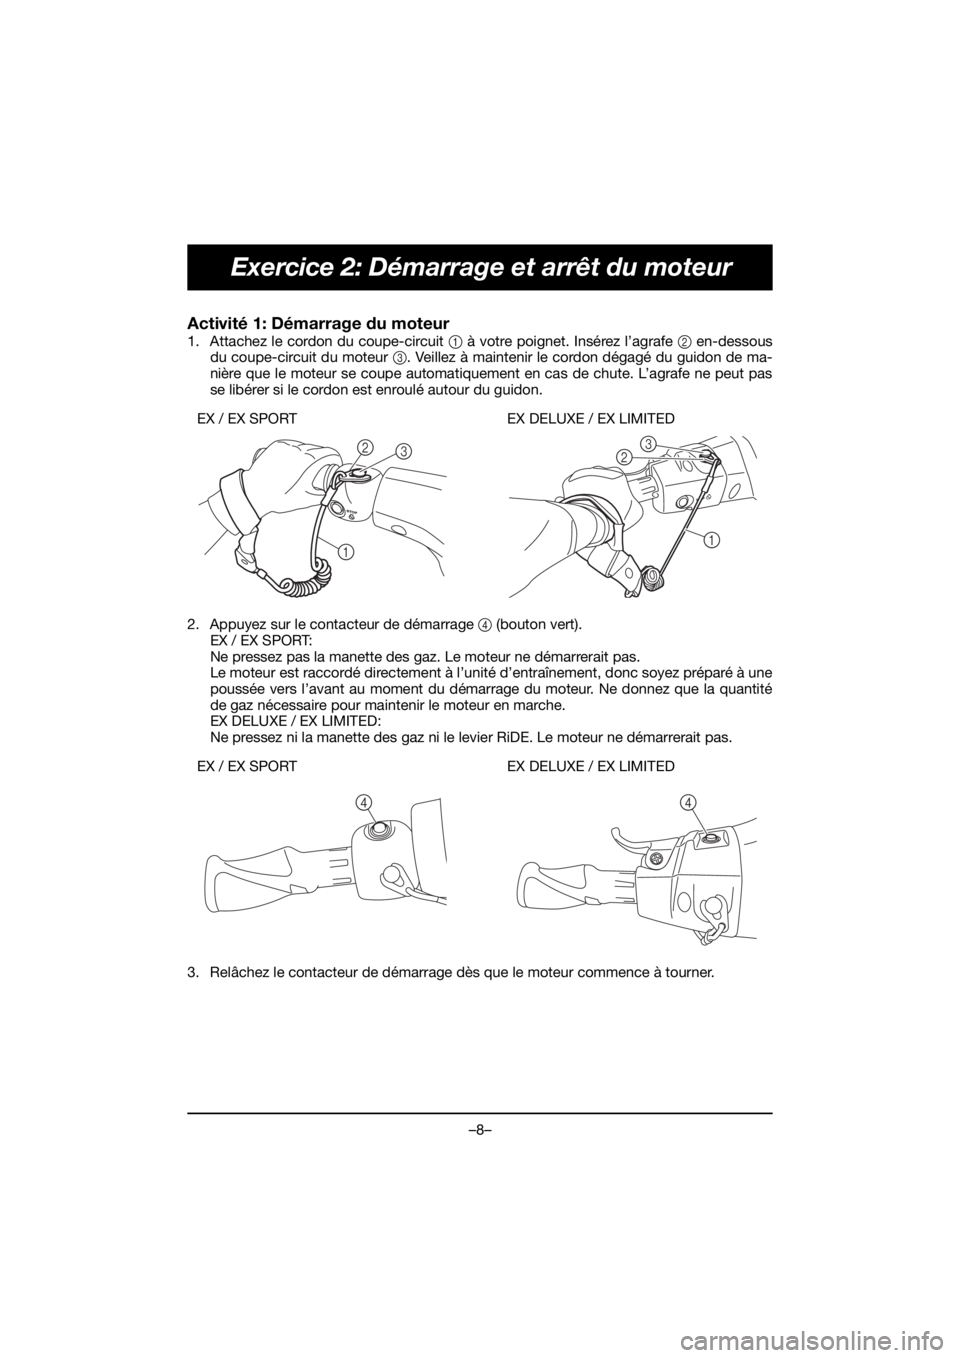 YAMAHA EX 2021  Manuale de Empleo (in Spanish) –8–
Exercice 2: Démarrage et arrêt du moteur
Activité 1: Démarrage du moteur 
1. Attachez le cordon du coupe-circuit 1 à votre poignet. Insérez l’agrafe 2 en-dessous
du coupe-circuit du mo